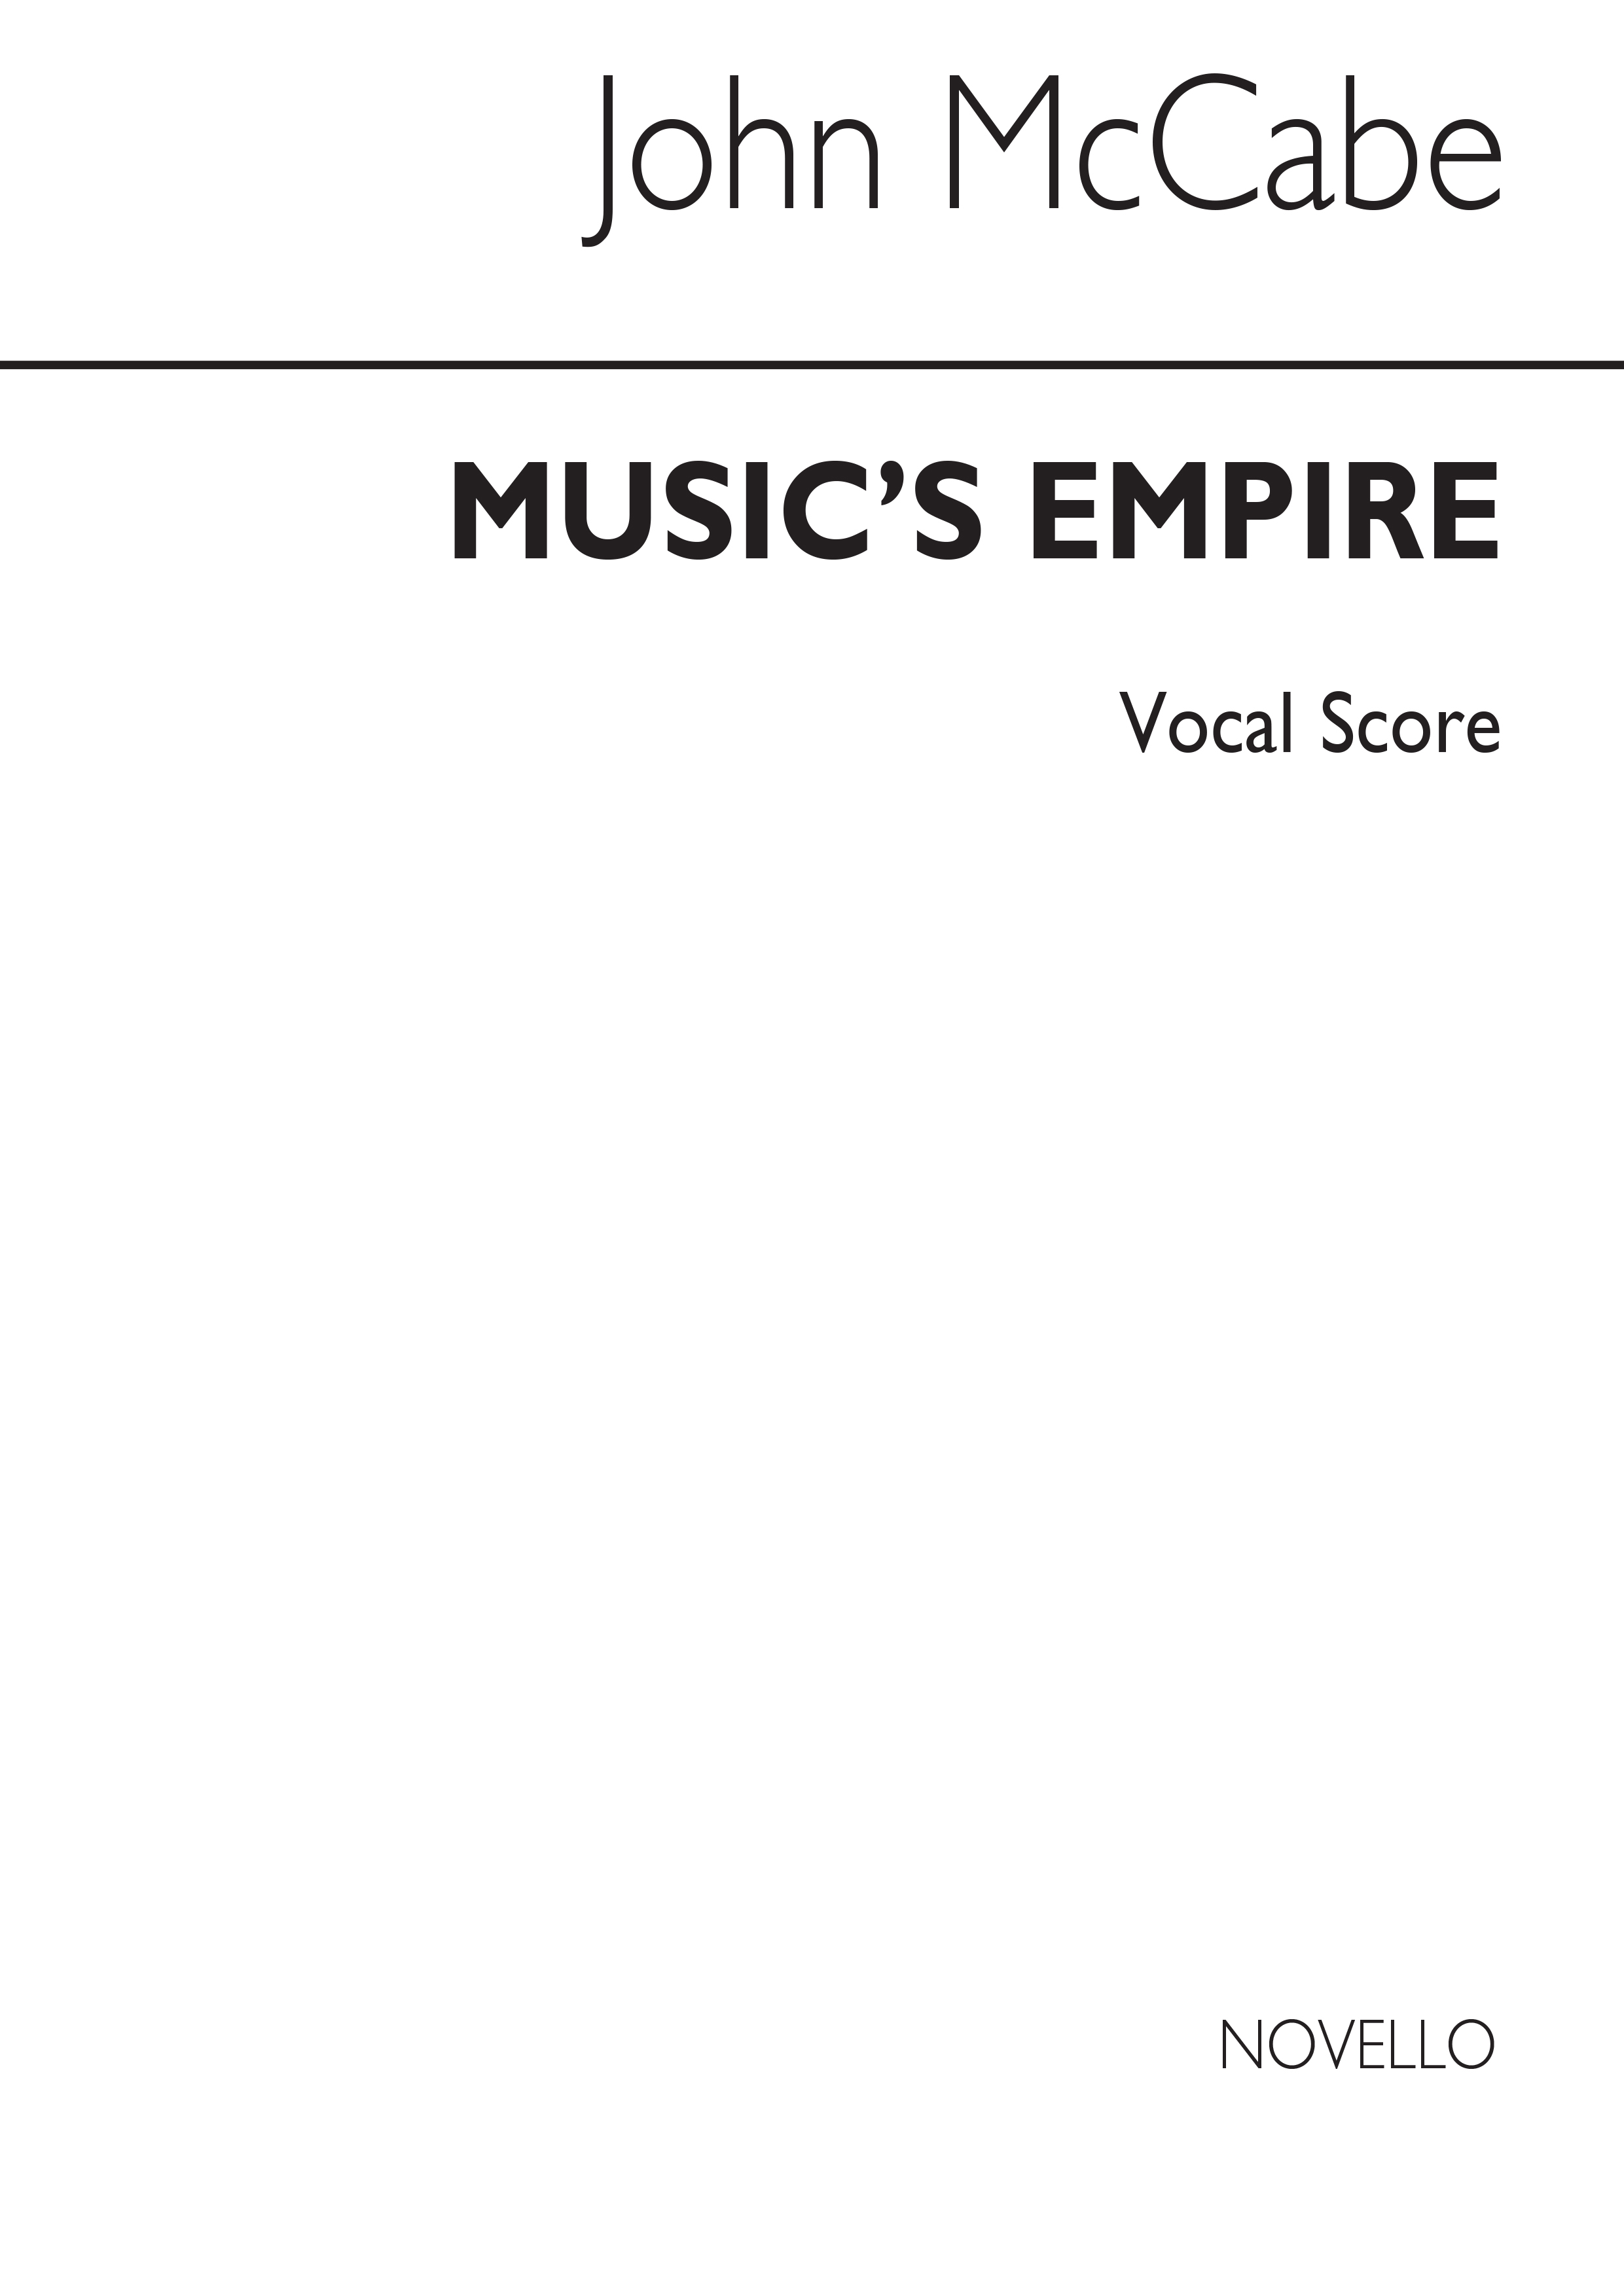 McCabe: Music's Empire (Vocal Score)